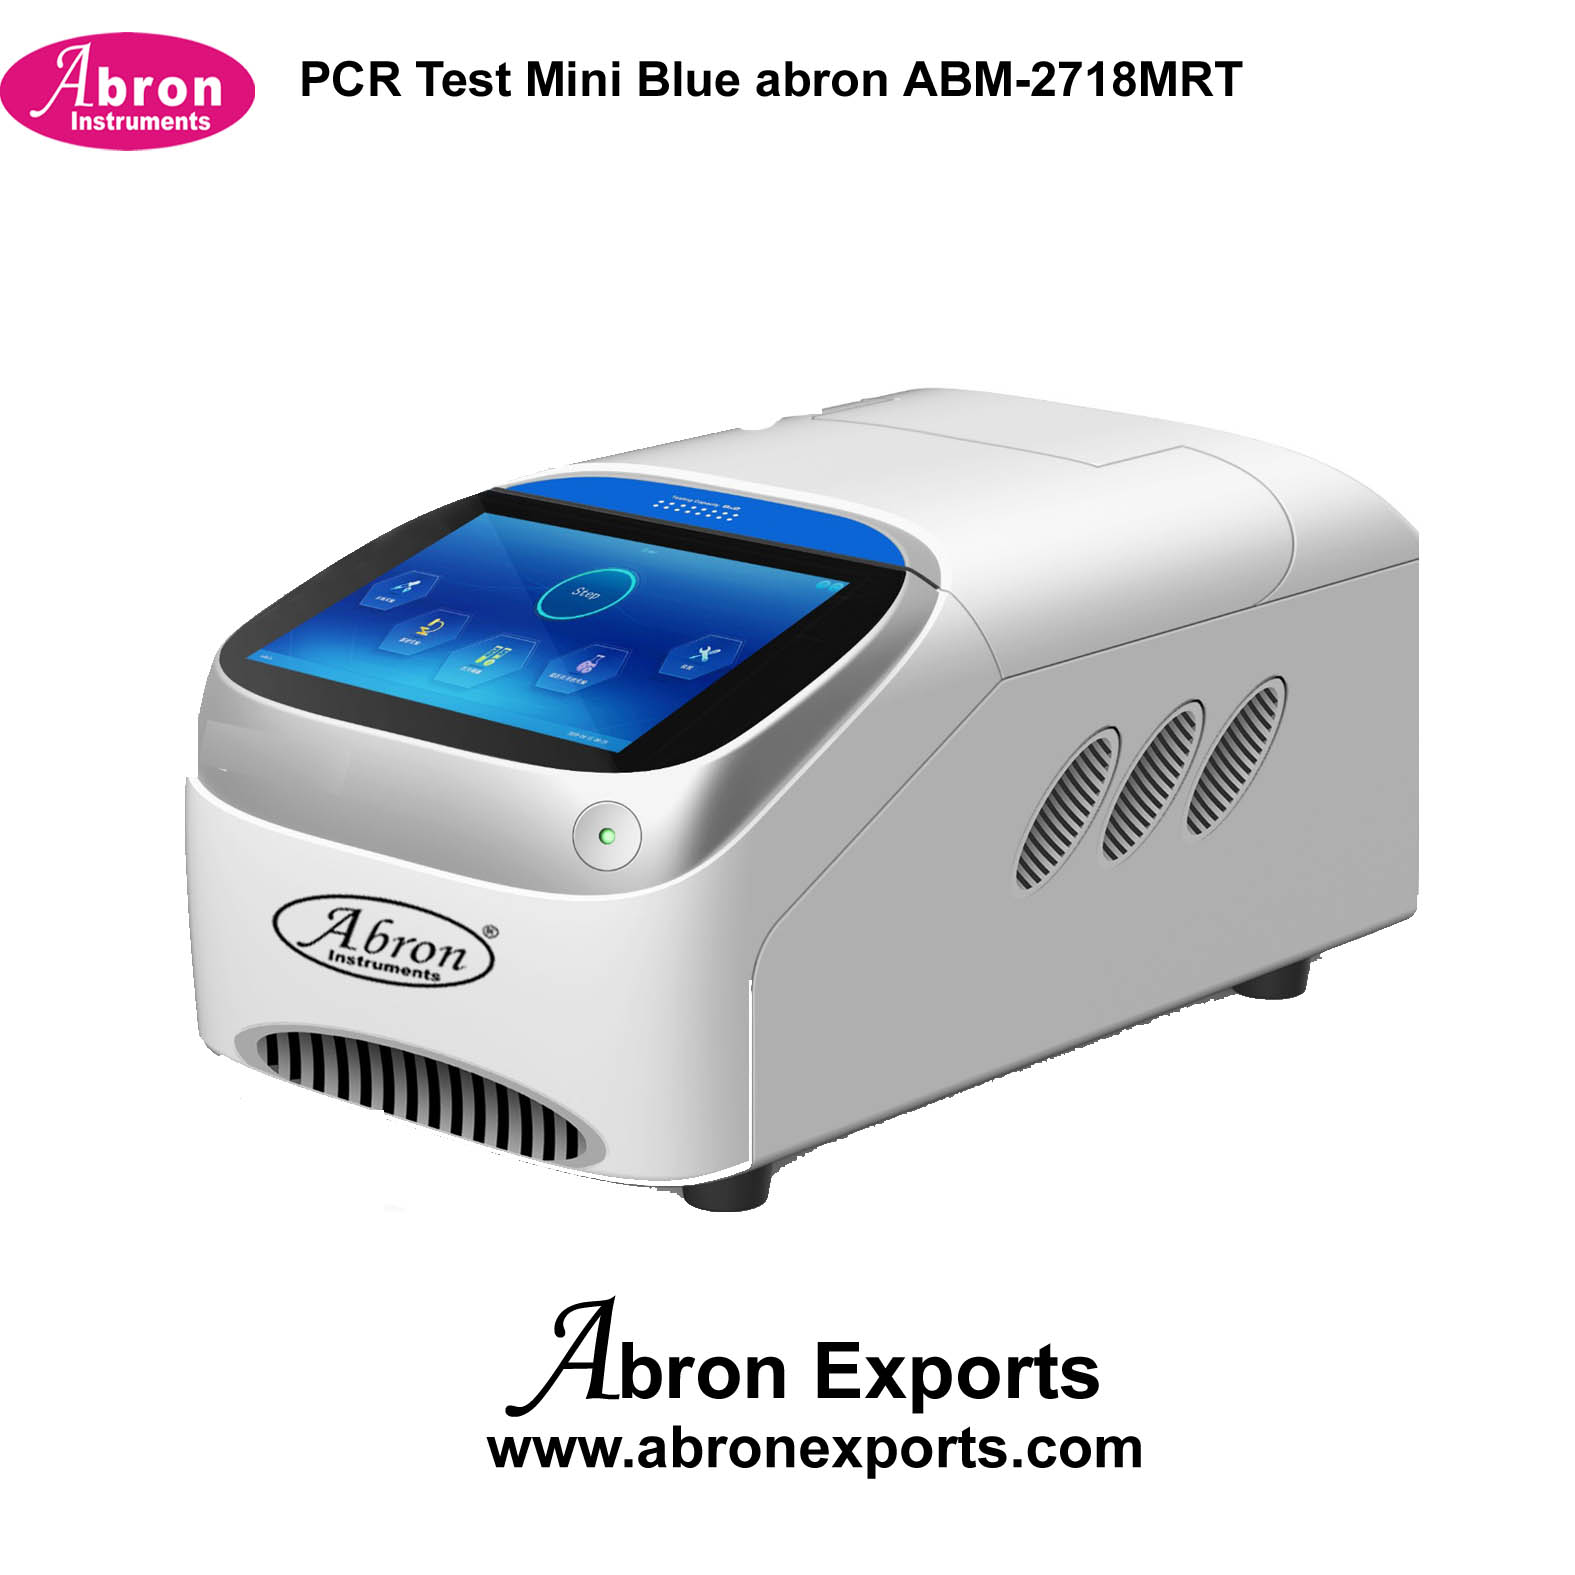 PCR Test Mini Blue Abron ABM-2718MRT